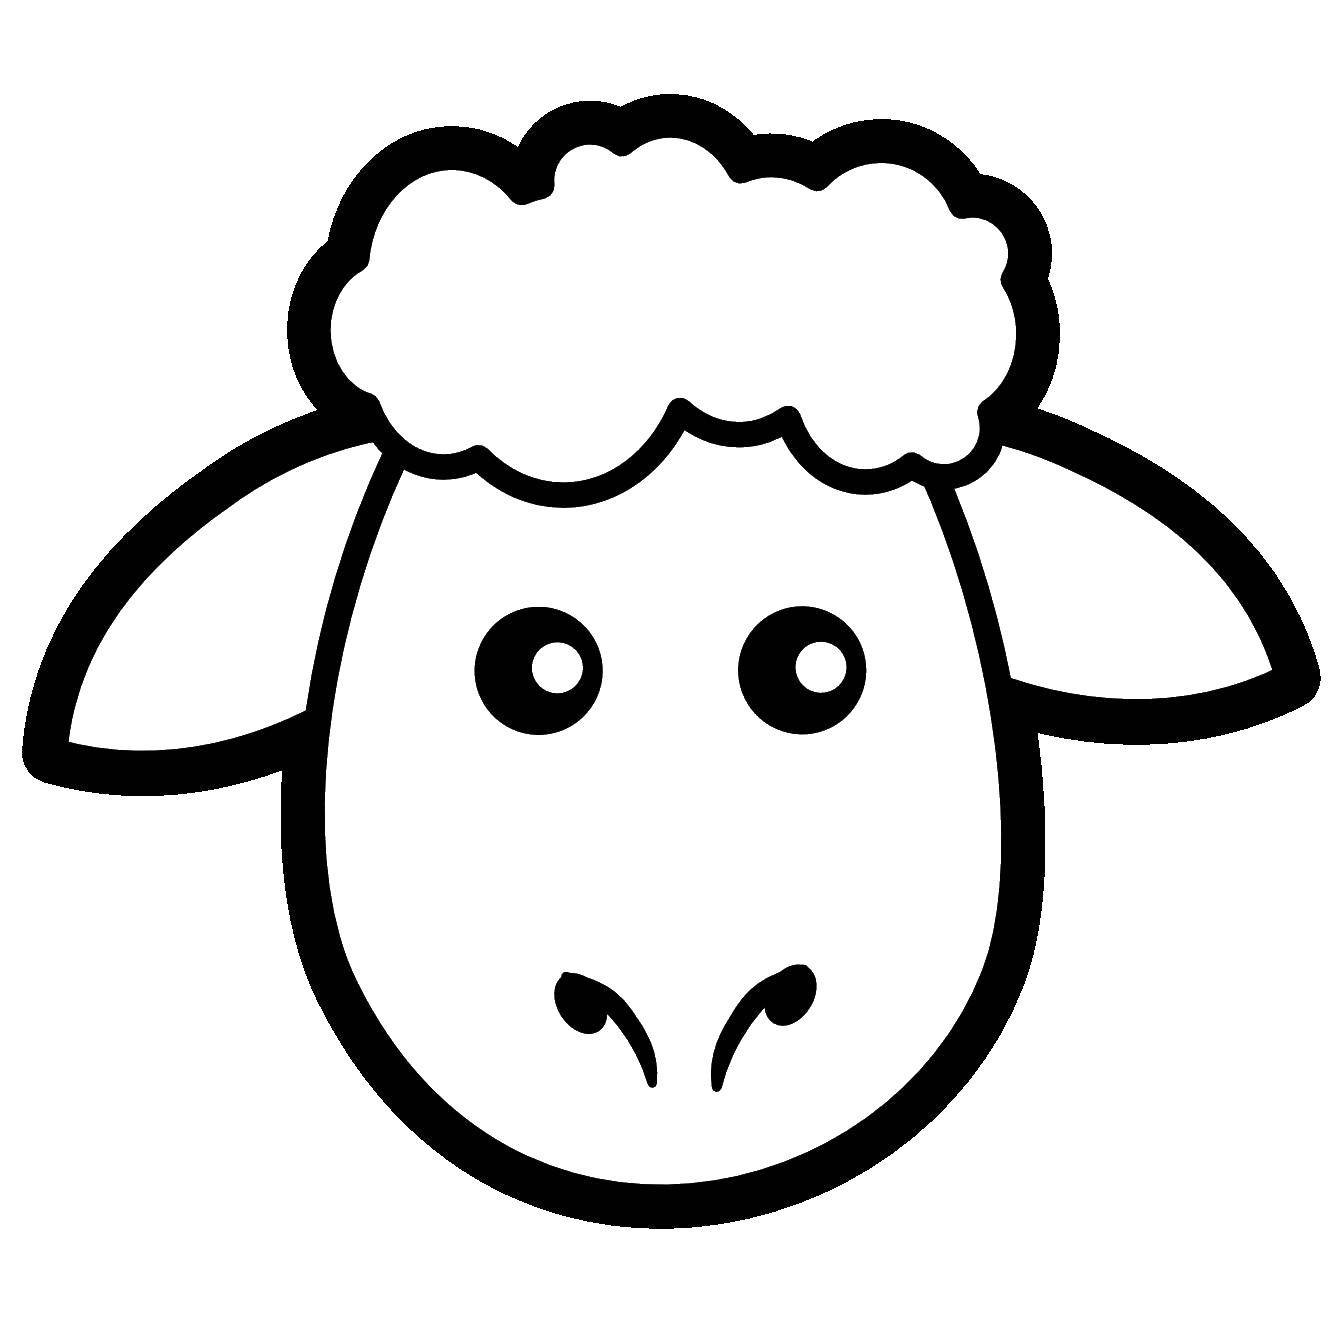 Название: Раскраска Голова овечки. Категория: Контур овечки для вырезания. Теги: голова, контур, овечка.